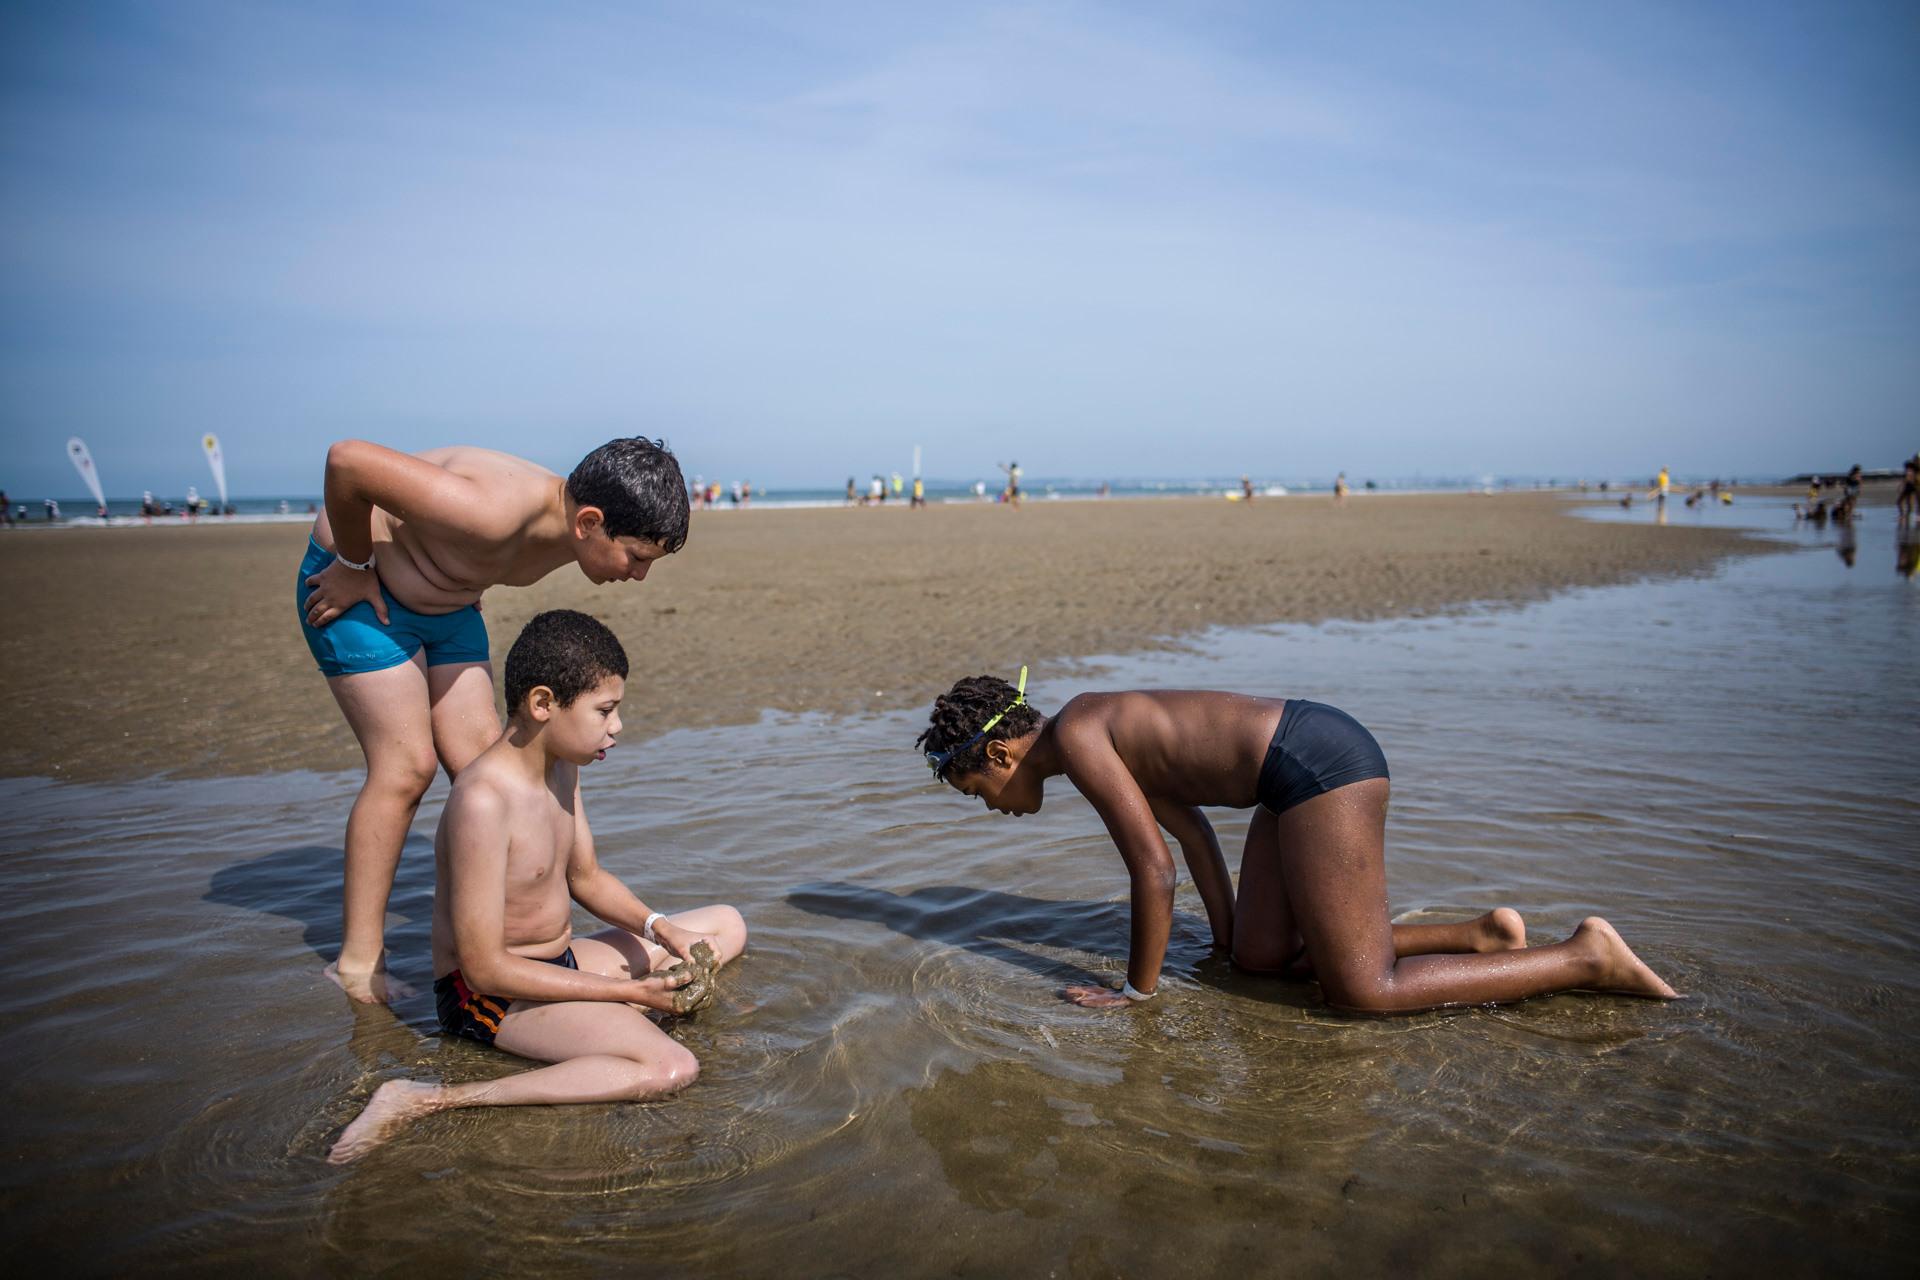 Susciter la curiosité, l'inattendue, la coopération. Objectifs atteints sur la célébrissime plage de Deauville.